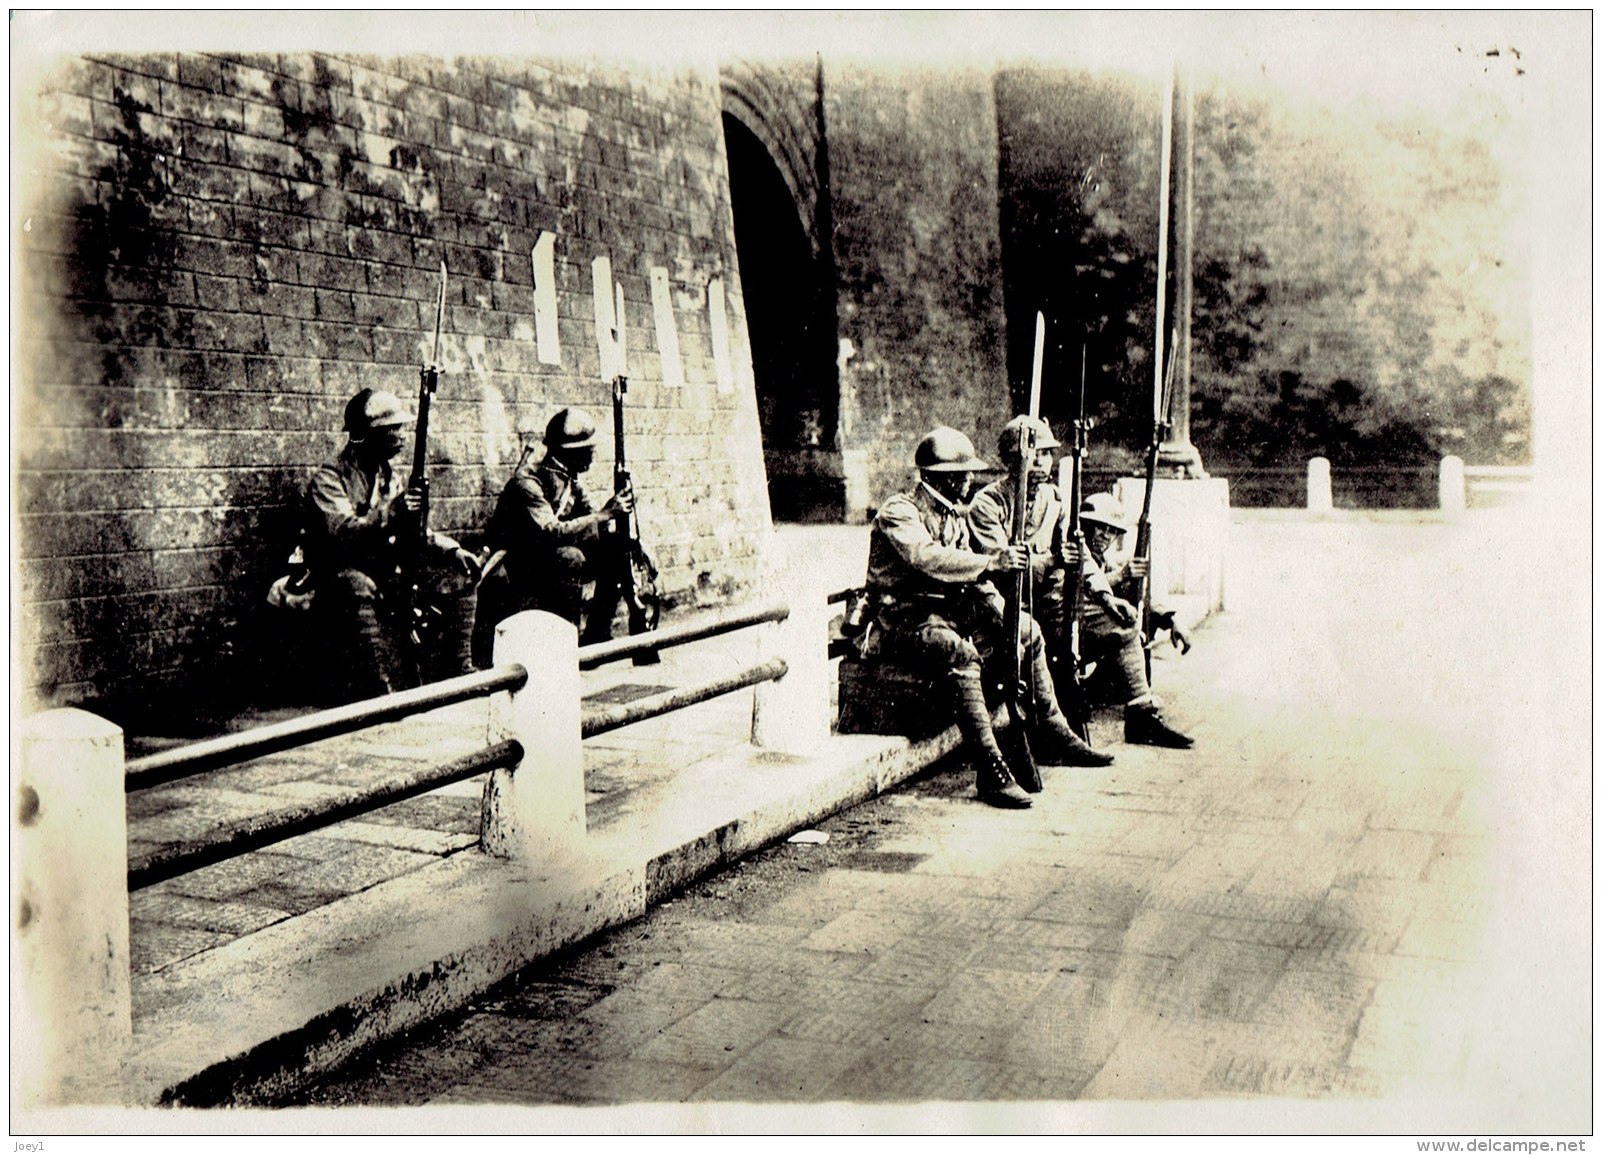 La Guerre En Mandchourie En 1931,Photo Meurisse - Krieg, Militär